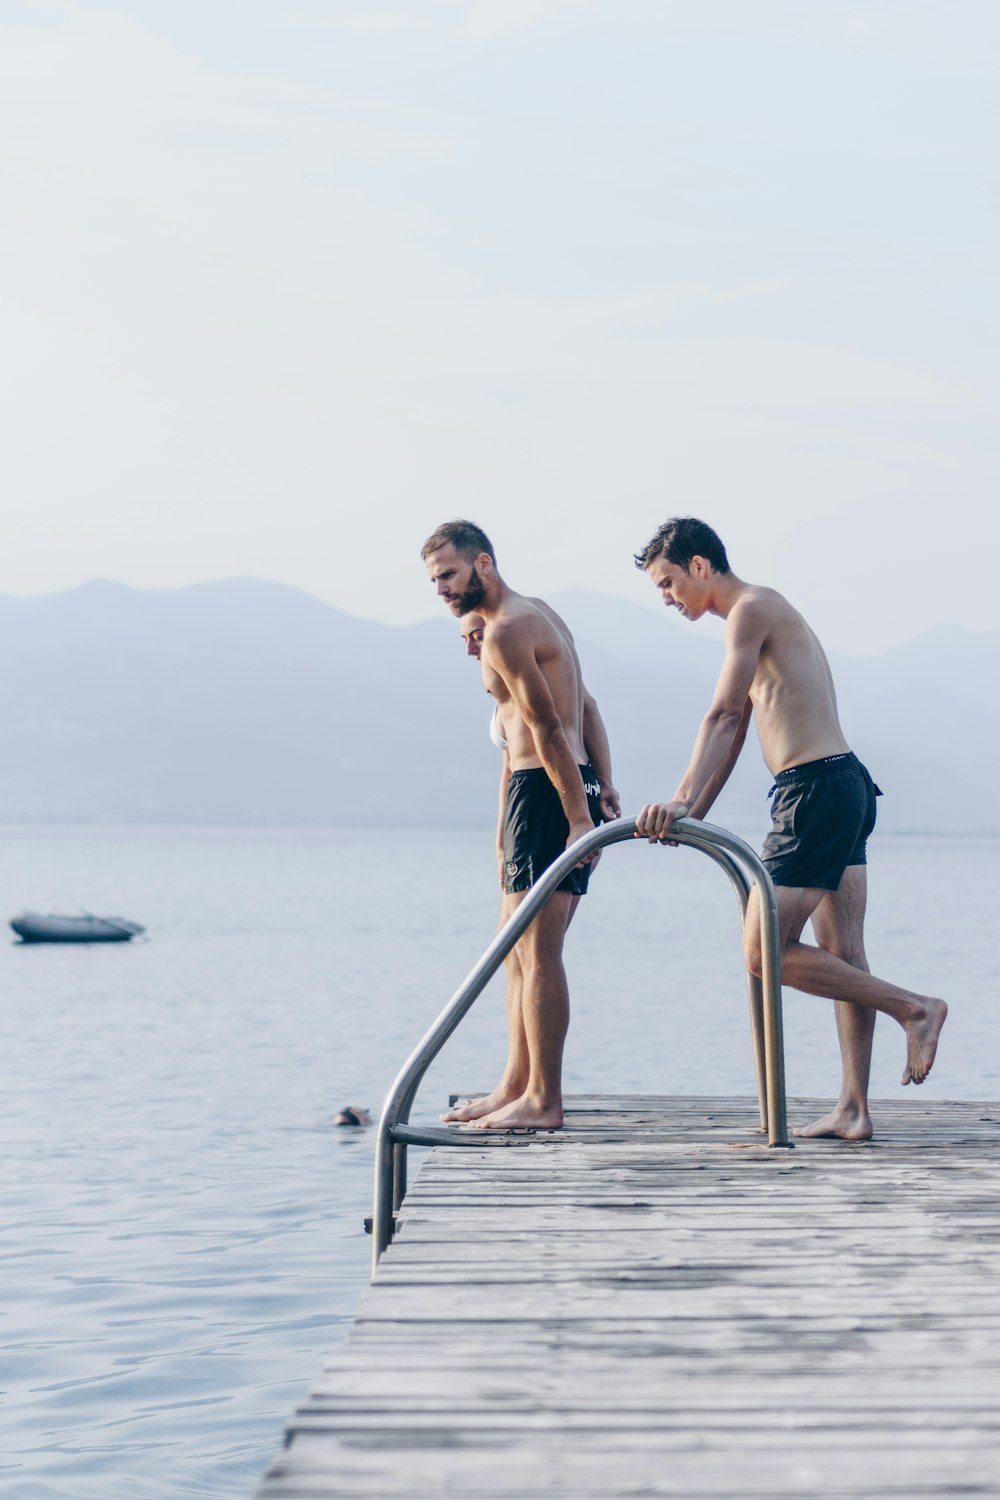 Zwei Männer stehen tagsüber auf dem braunen Dock in der Nähe eines Gewässers